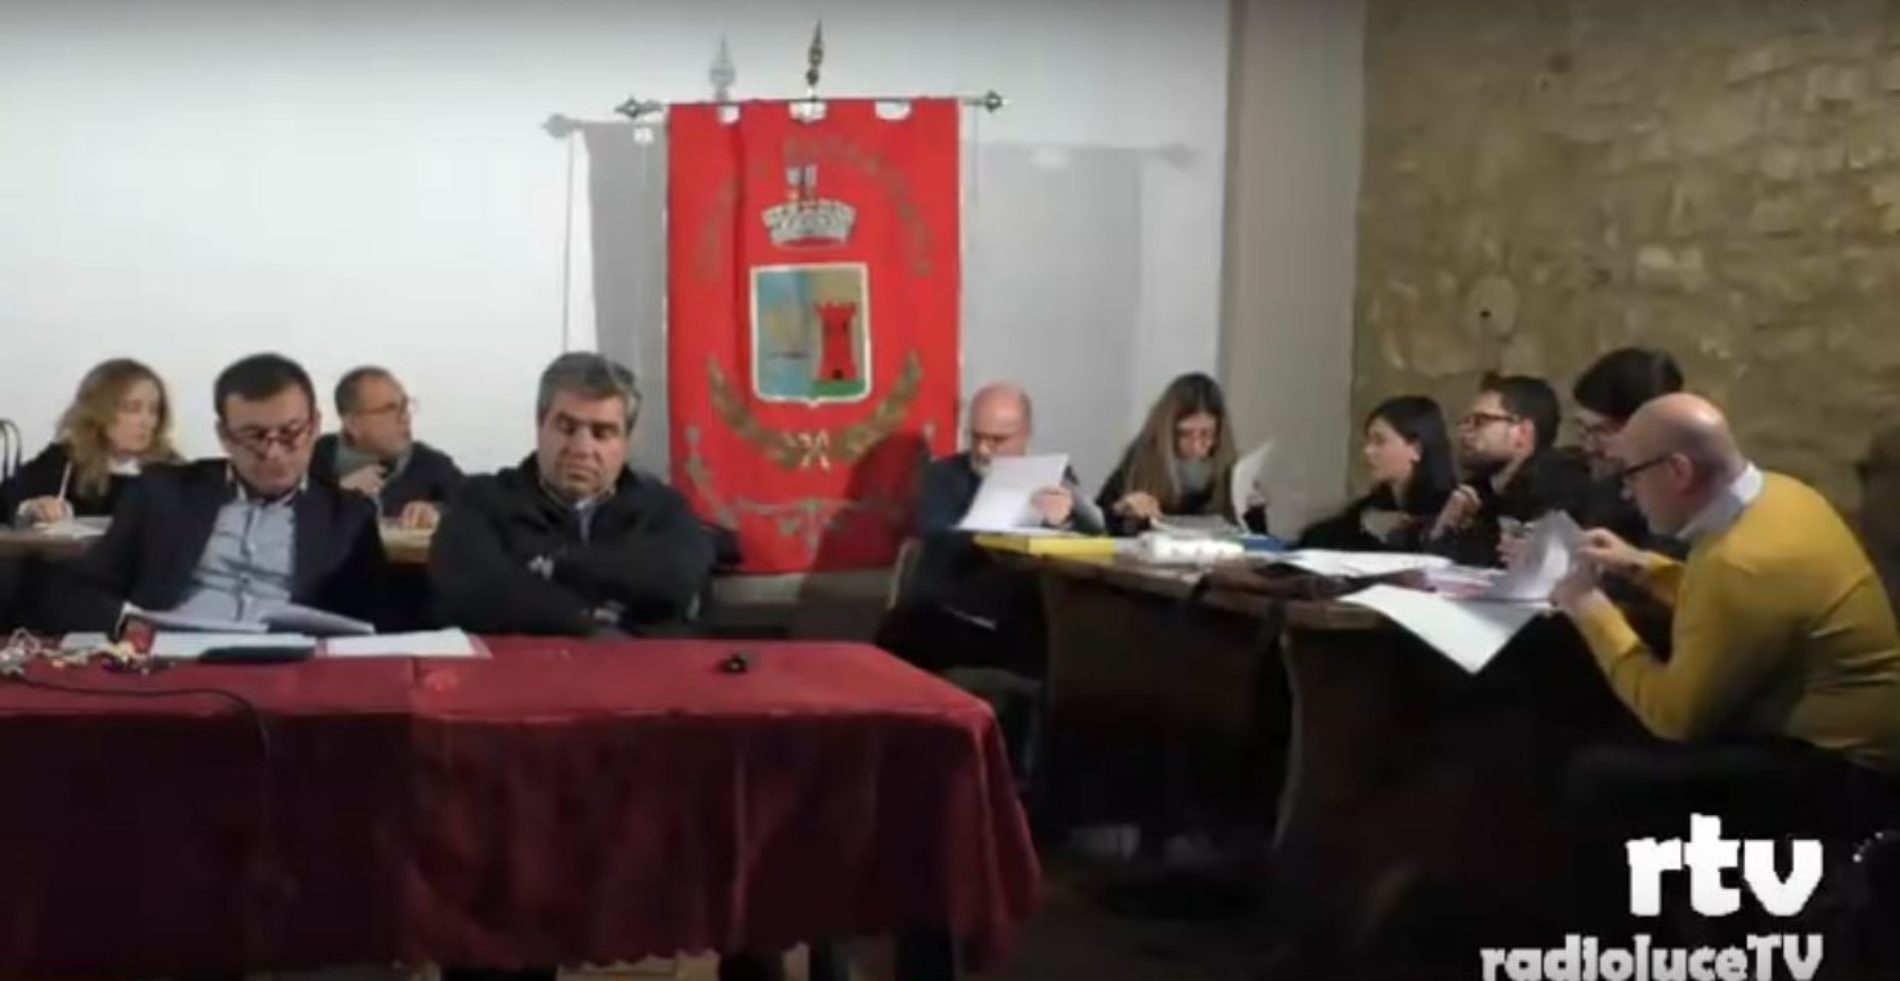 Barrafranca. Annullamento delle delibere, comunicato dei consiglieri di opposizione